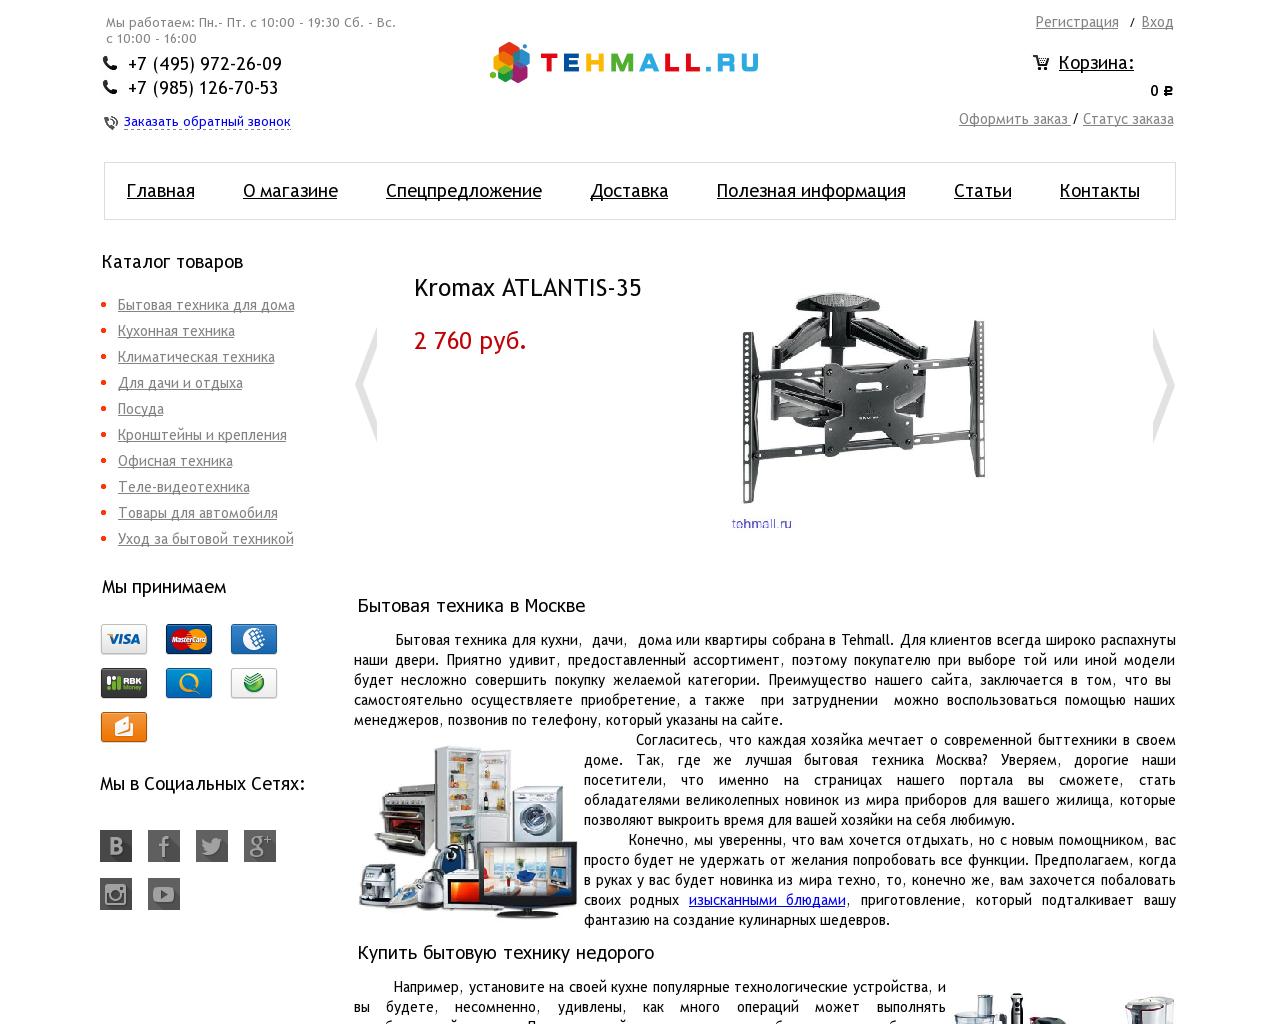 Изображение сайта tehmall.ru в разрешении 1280x1024